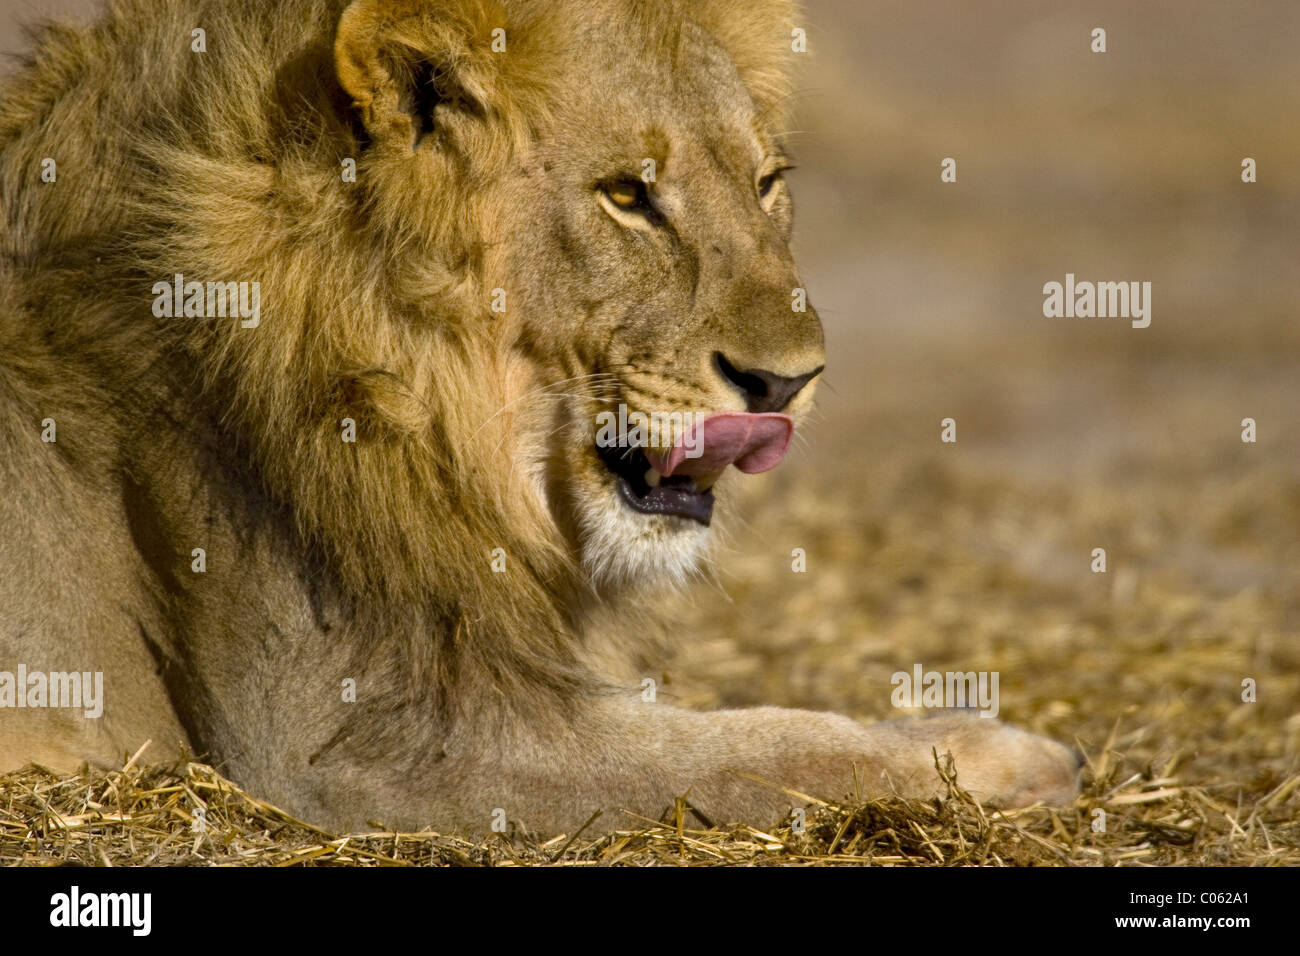 Male lion licking his lips, Etosha National Park, Namibia Stock Photo